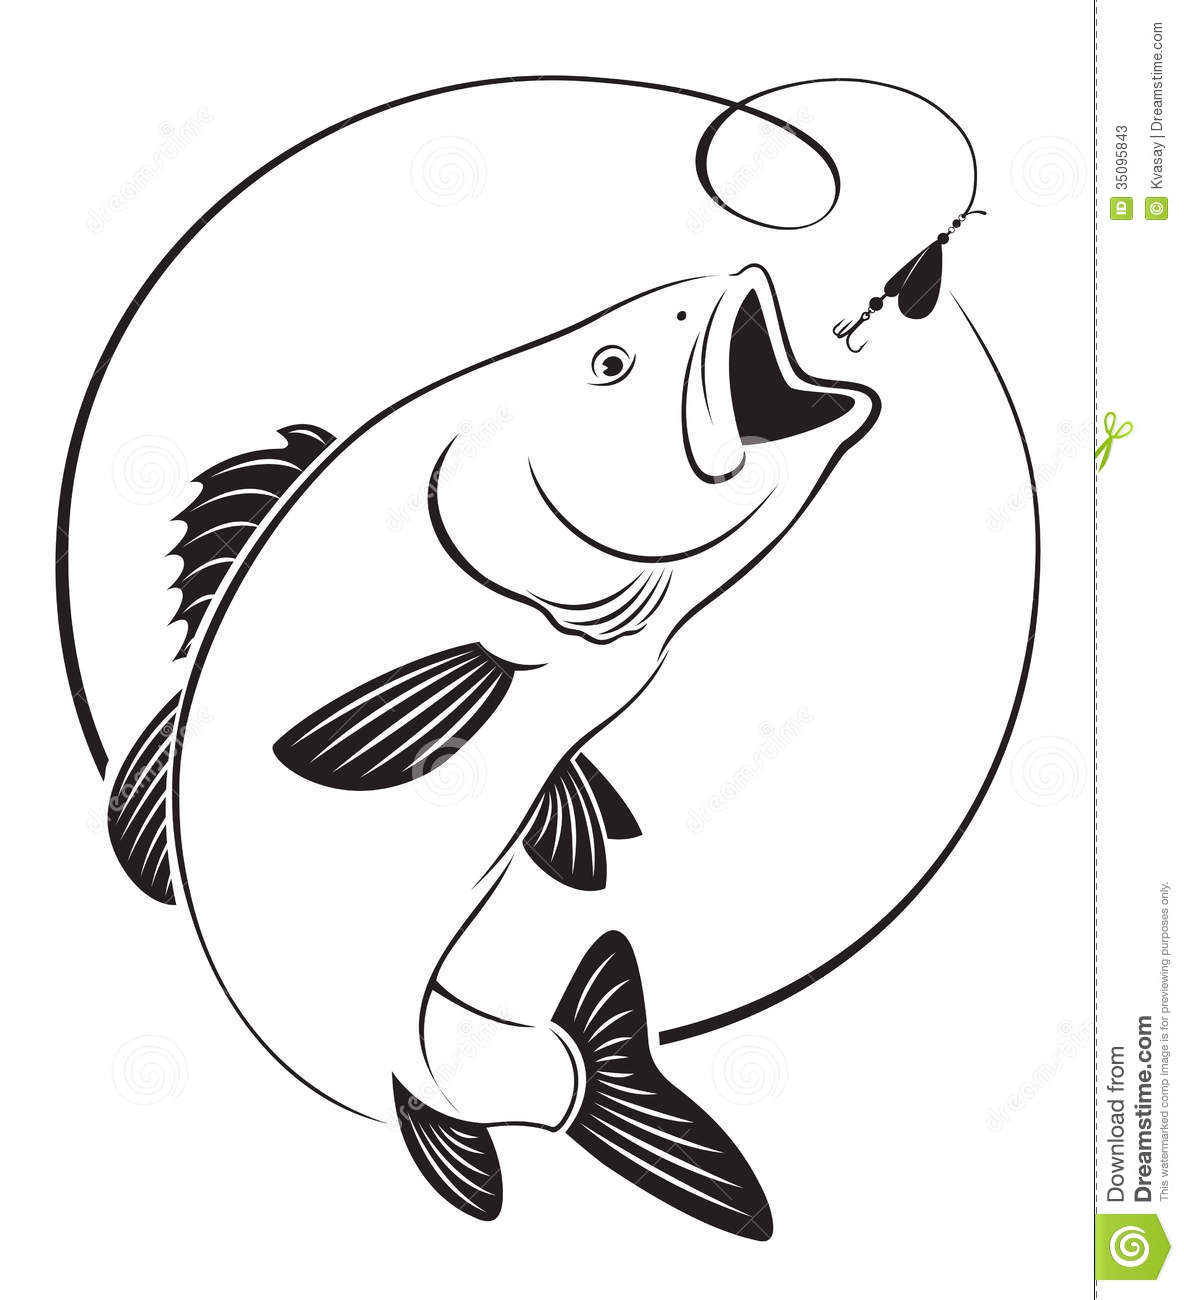 Bass Fish Clip Art 1